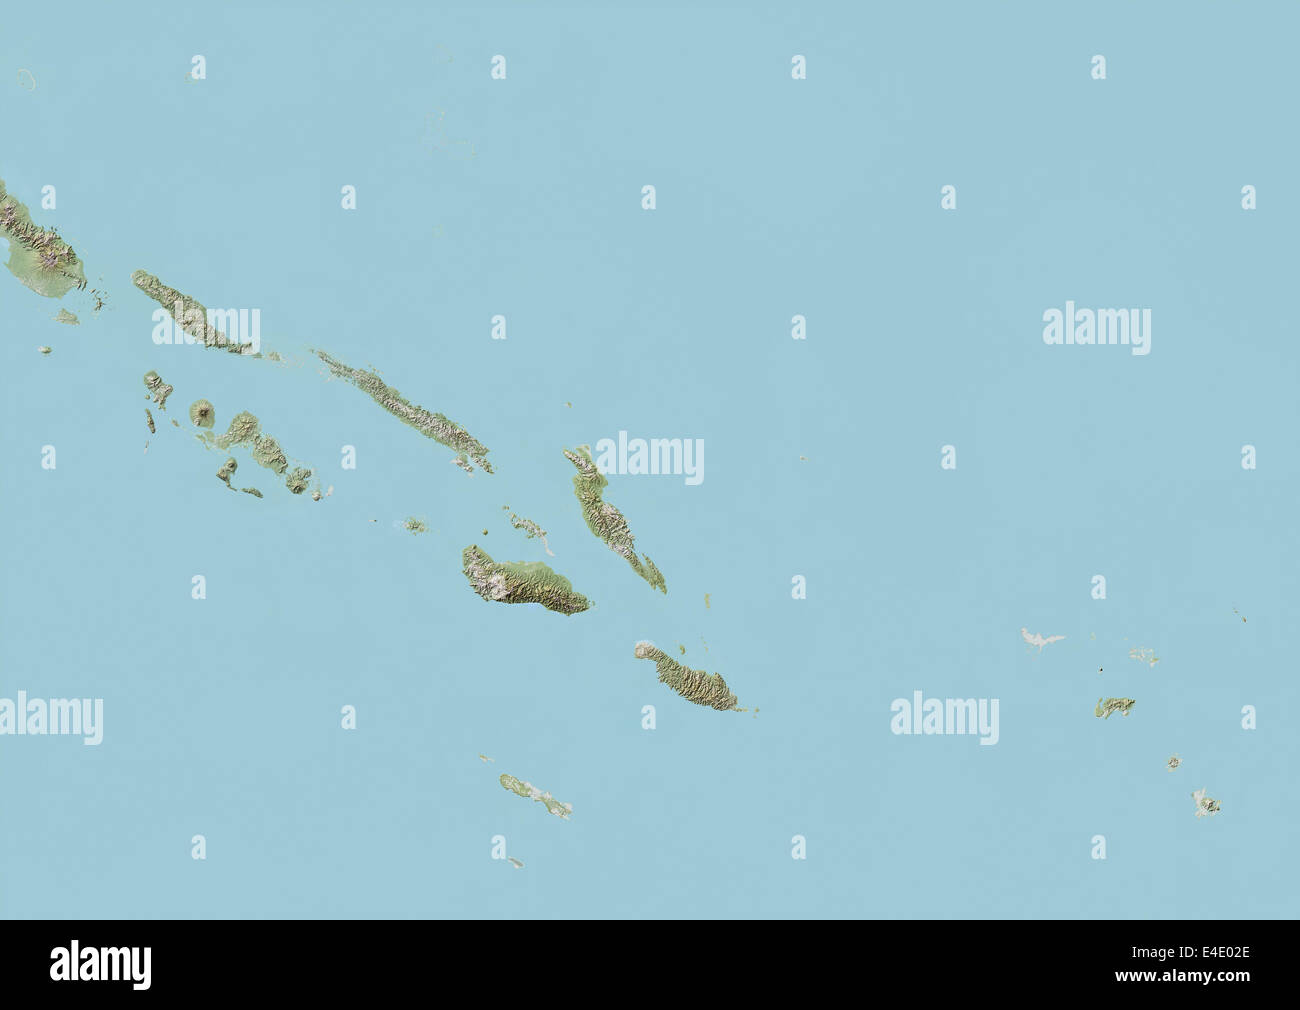 Map solomon islands immagini e fotografie stock ad alta risoluzione - Alamy